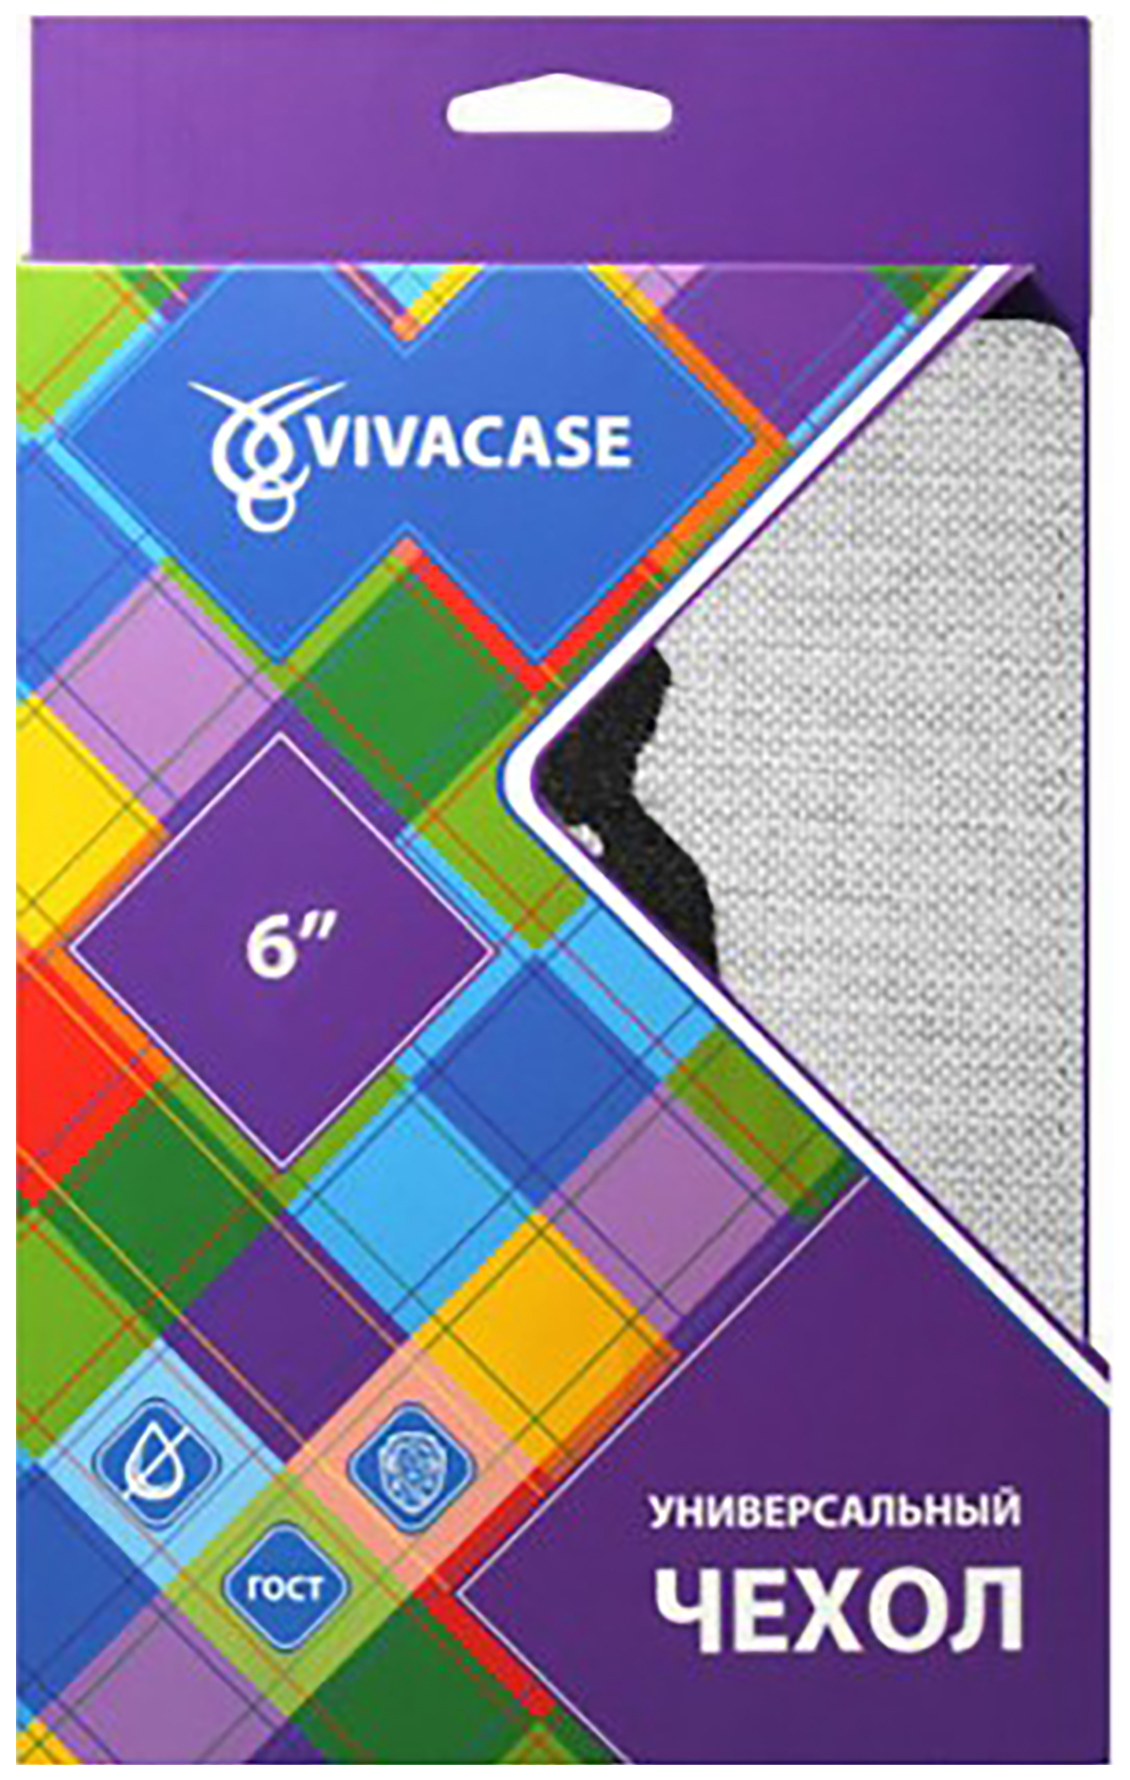 Чехол для электронной книги Vivacase Girl 6" Grey